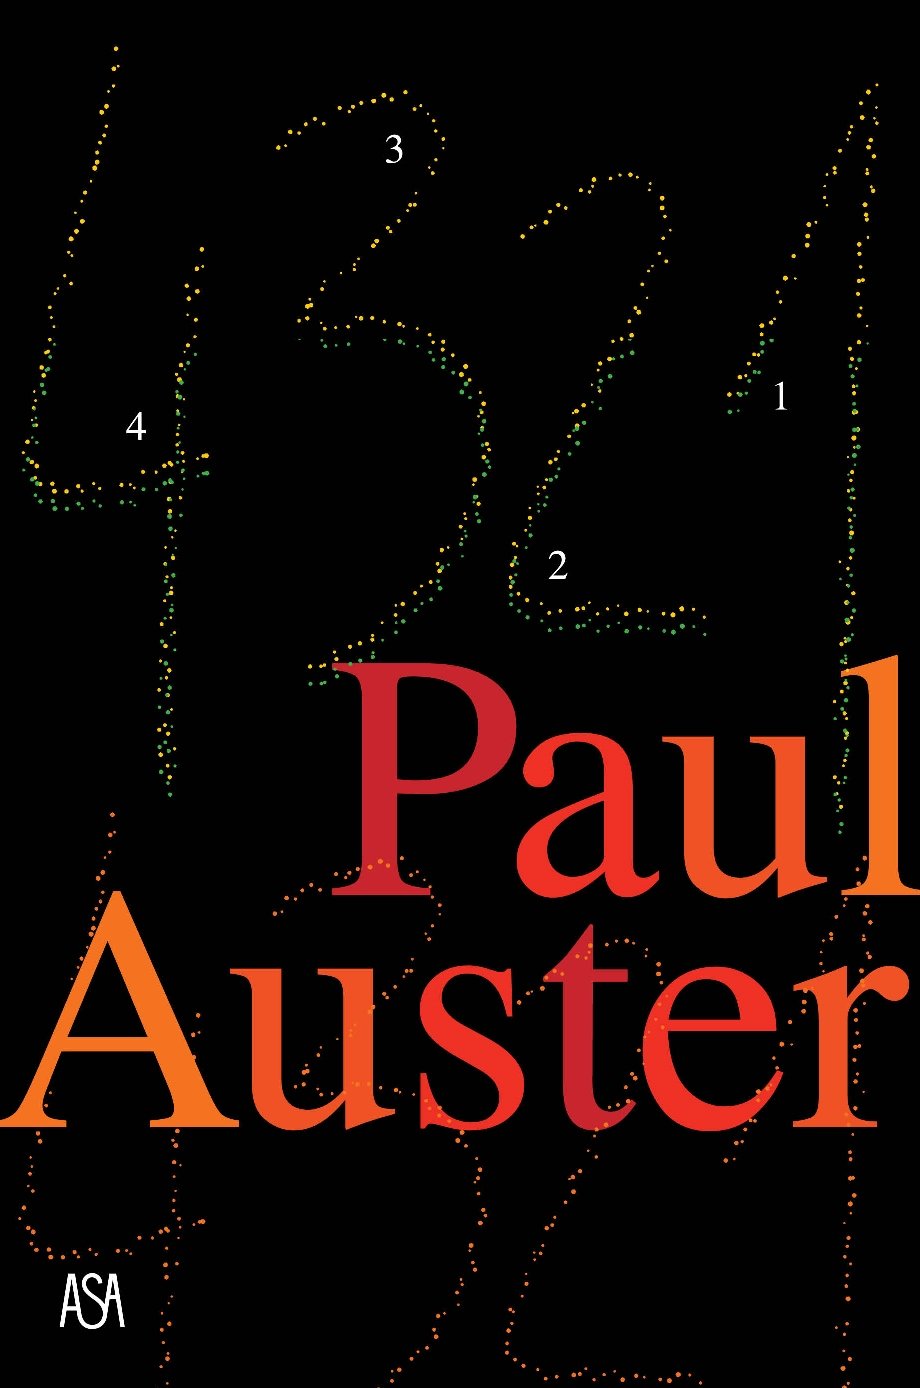 Paul Auster 4321_ASA